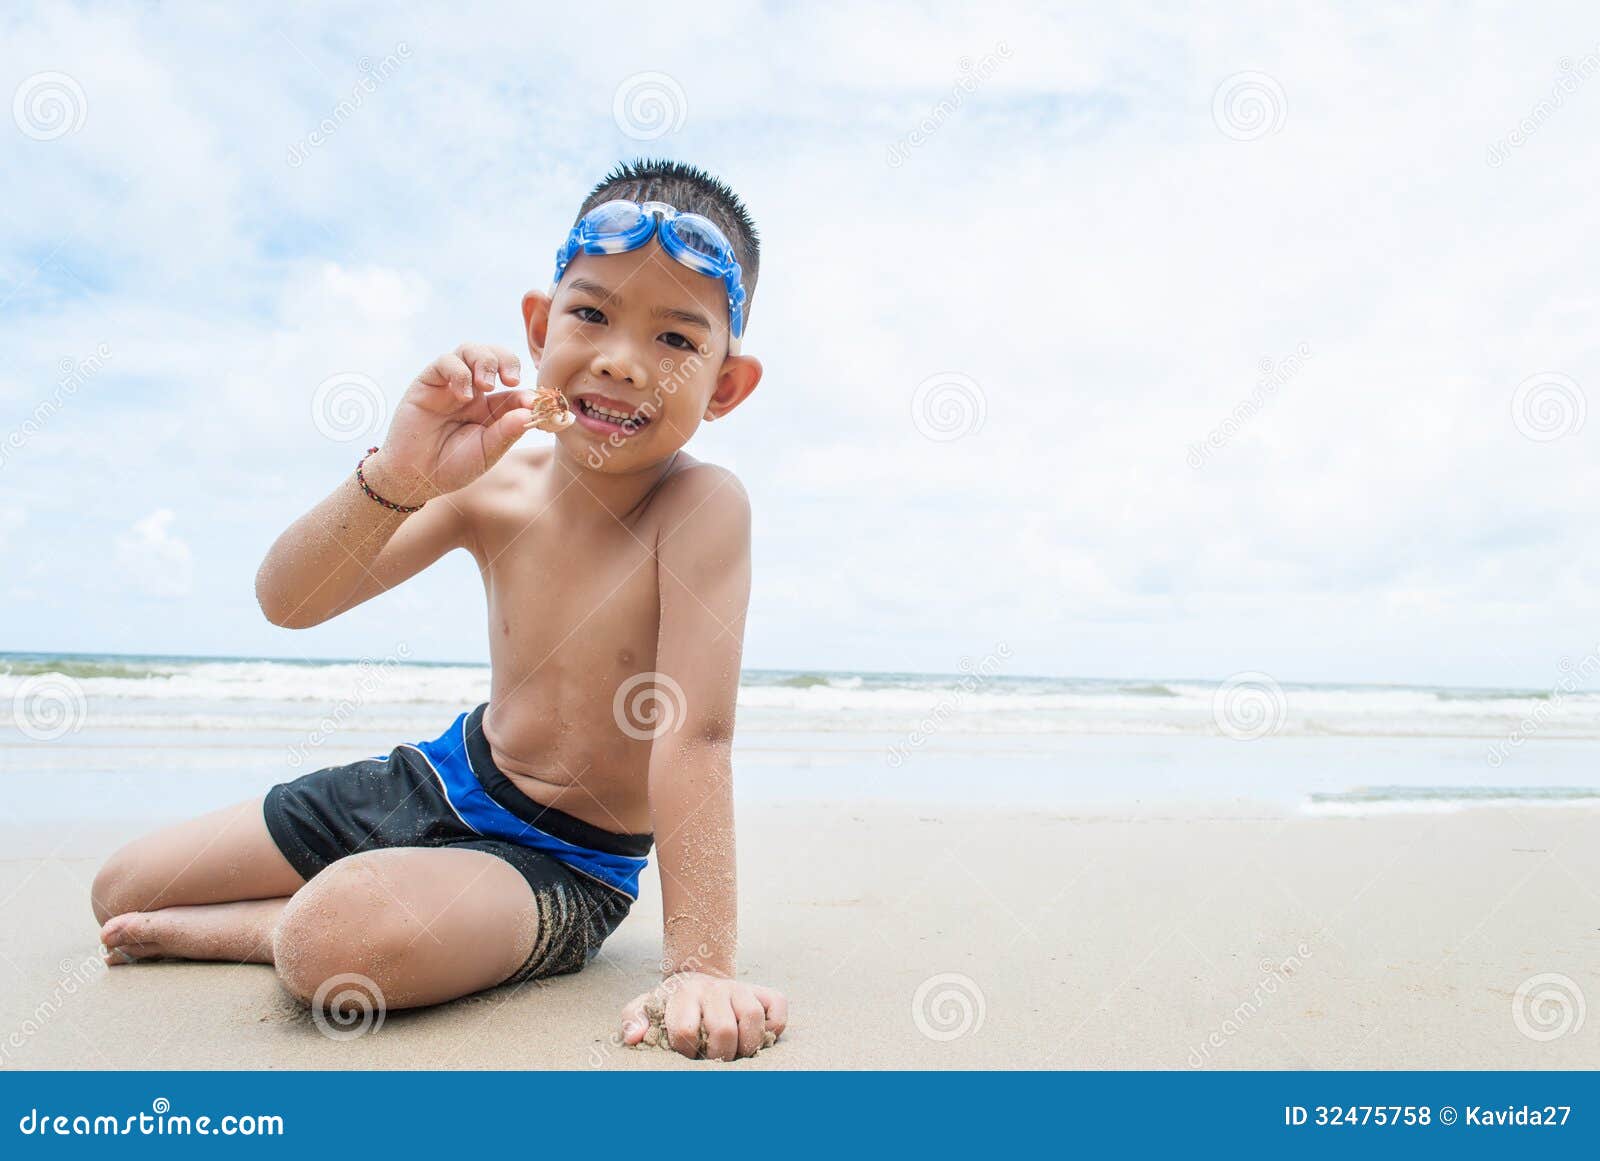 порно маленькие мальчики пляж фото 46